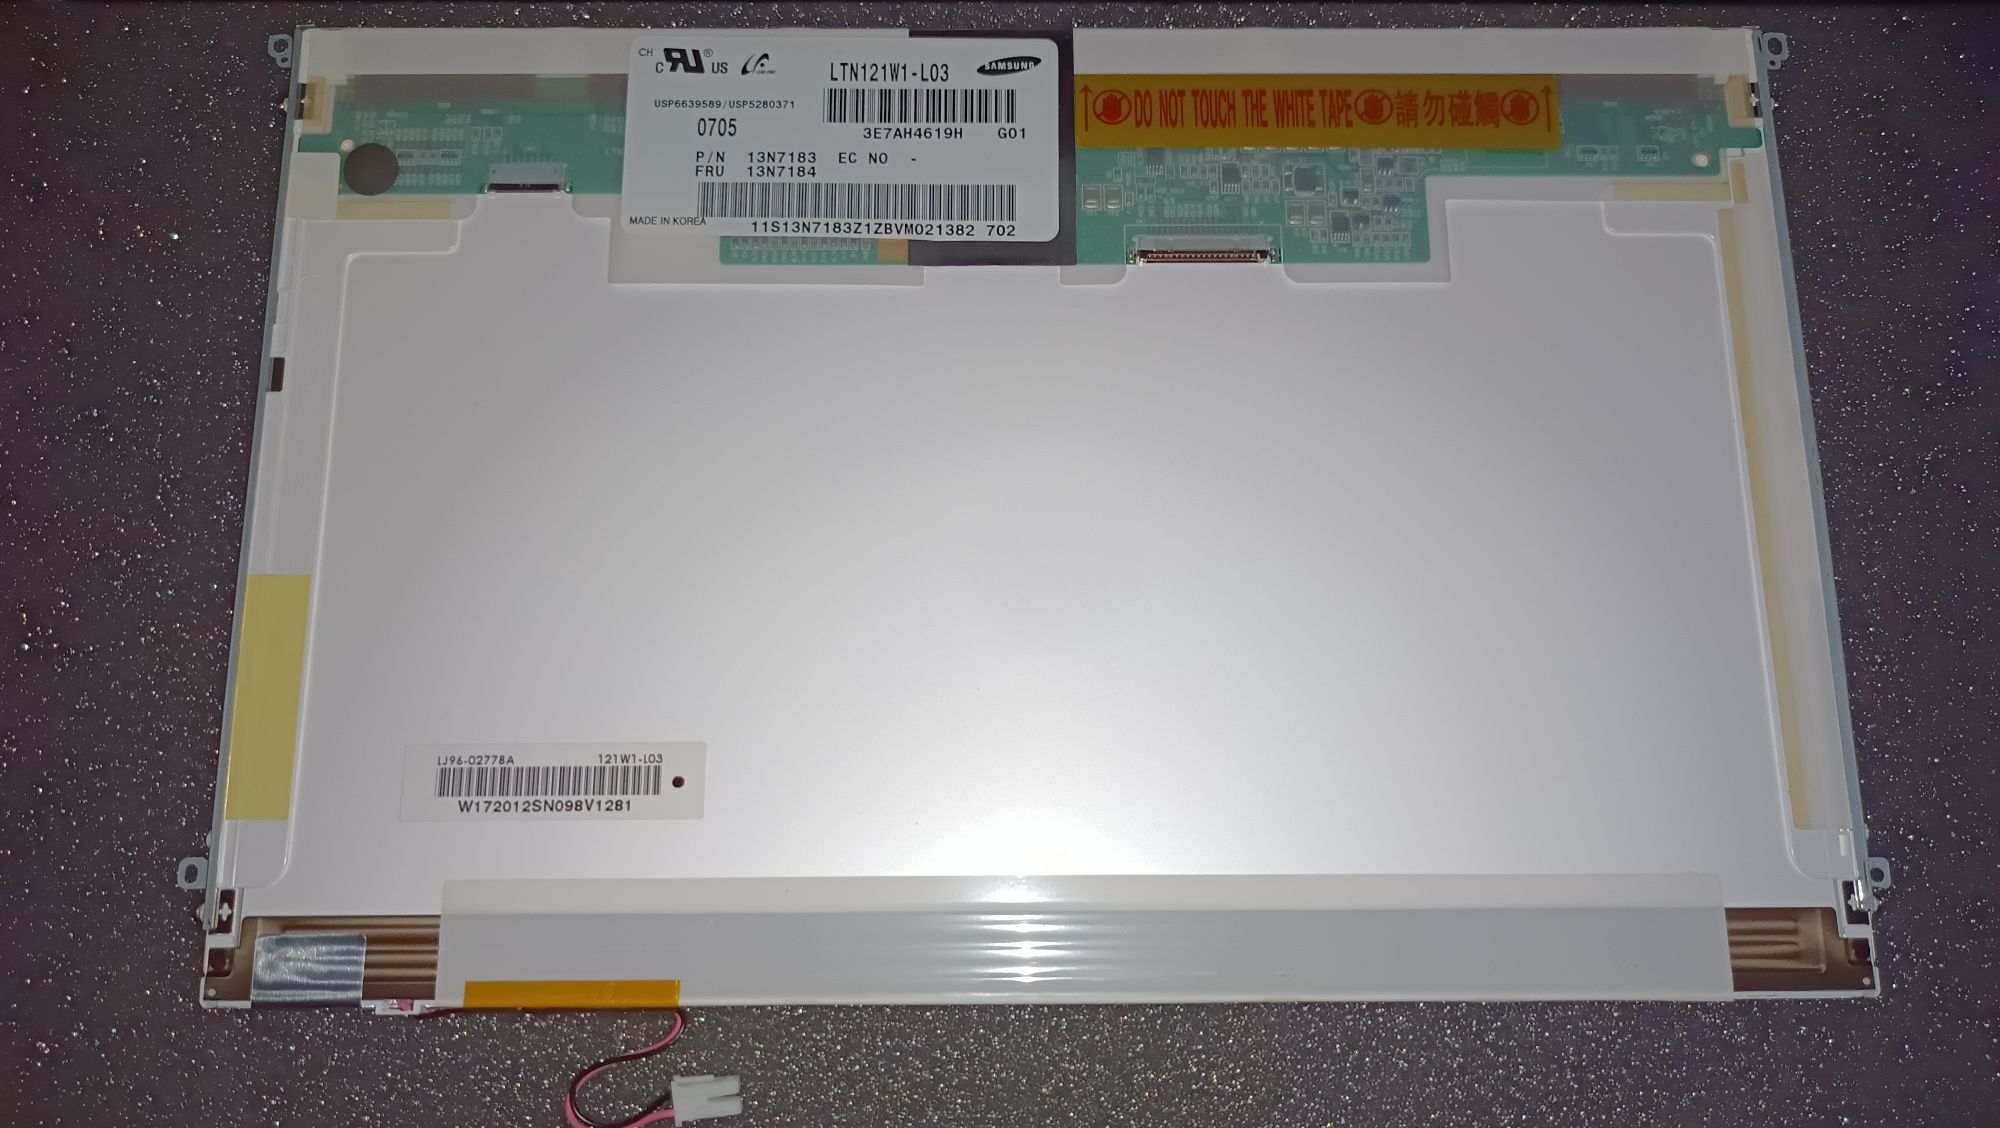 Ecrã 12.1" LCD Samsung LTN121W1-L03 (G)